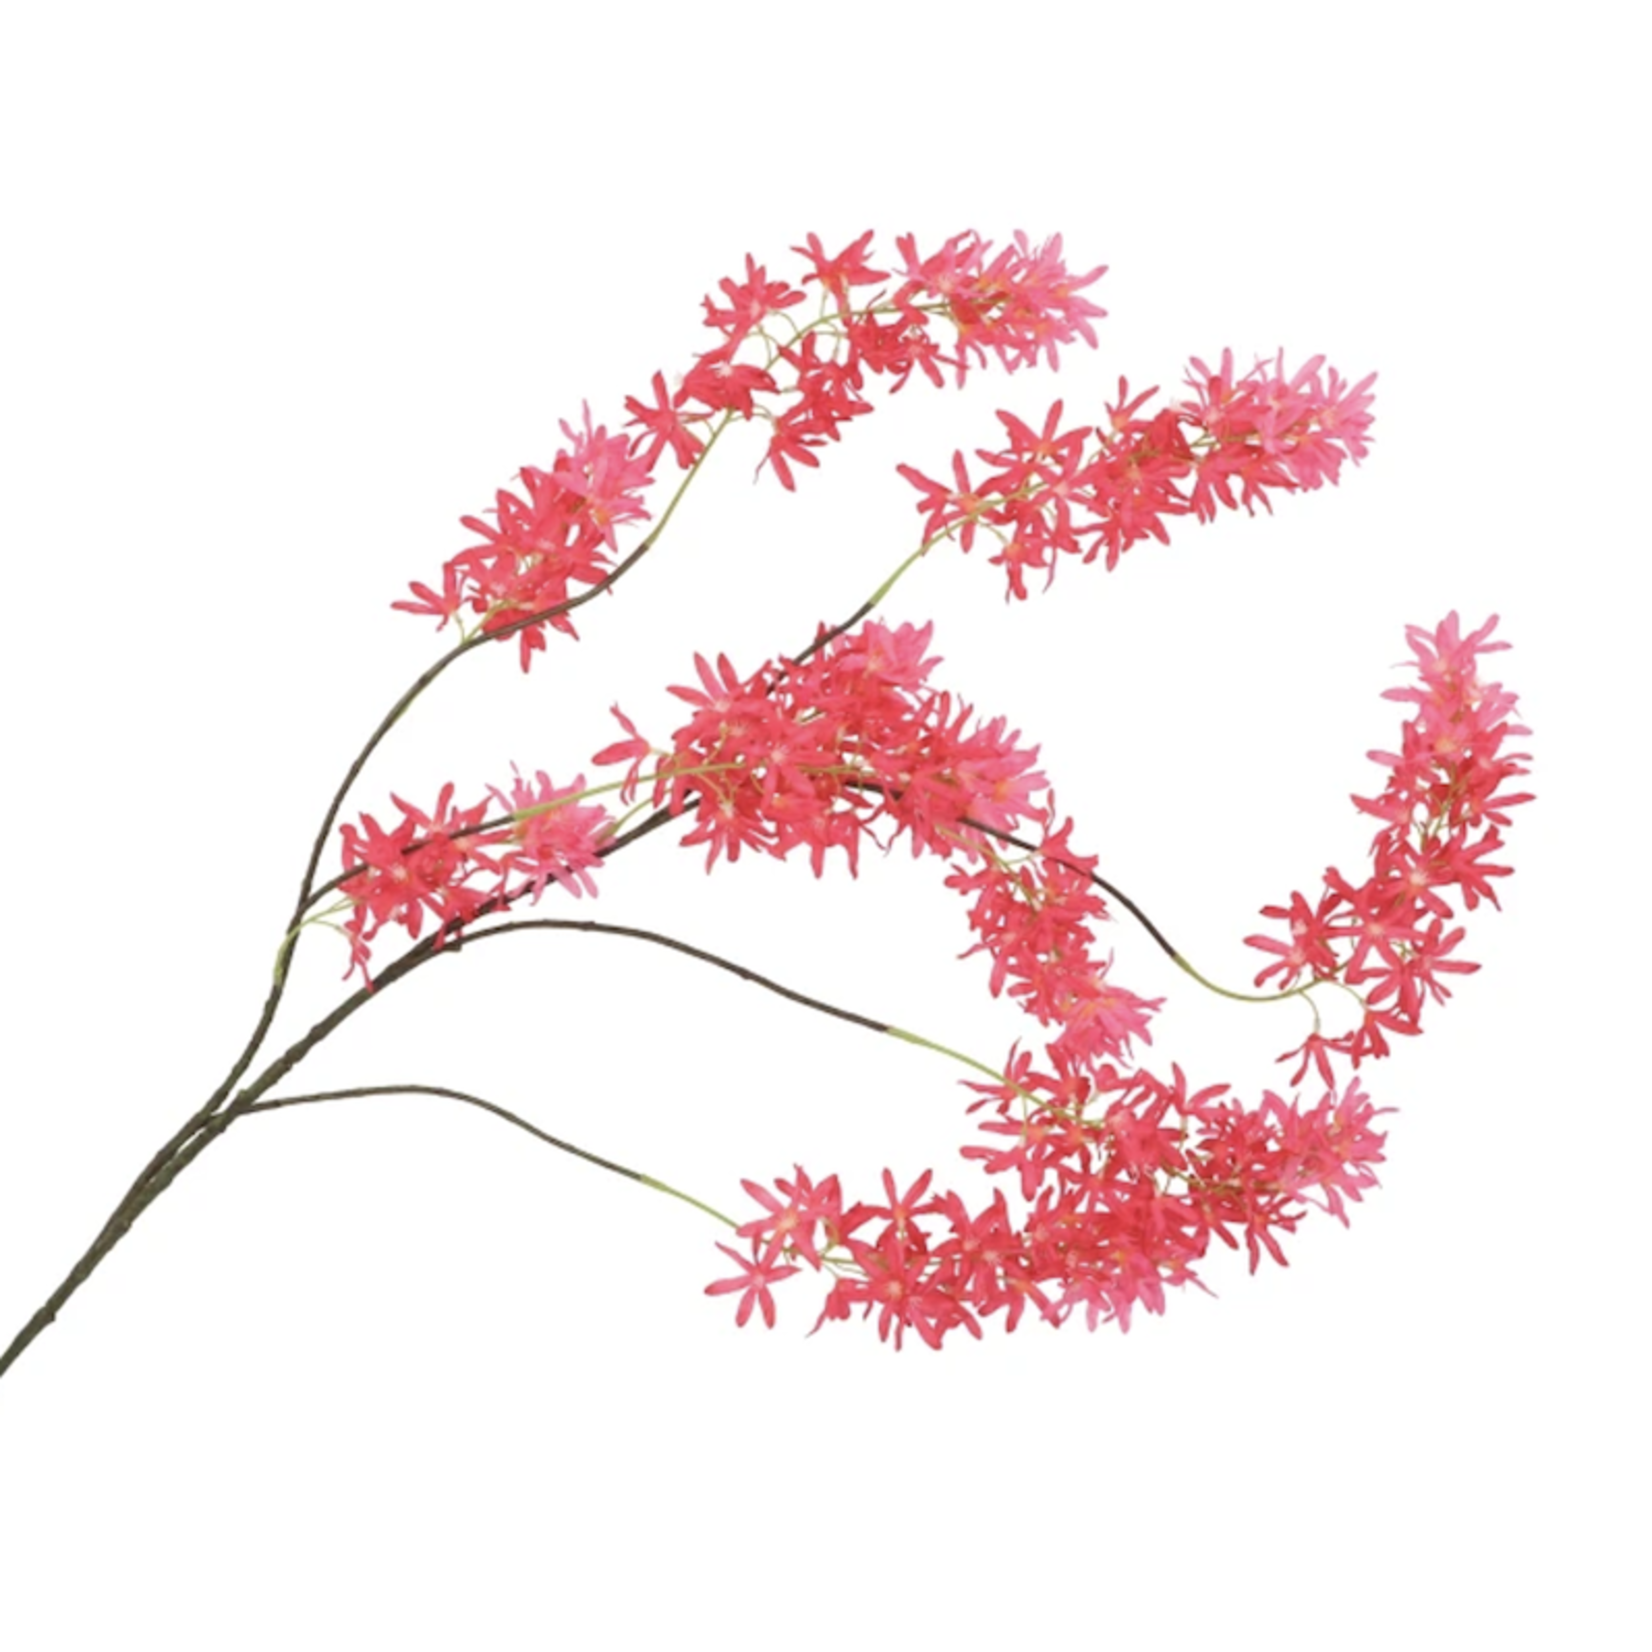 Zijden bloem - Wisteria cherry